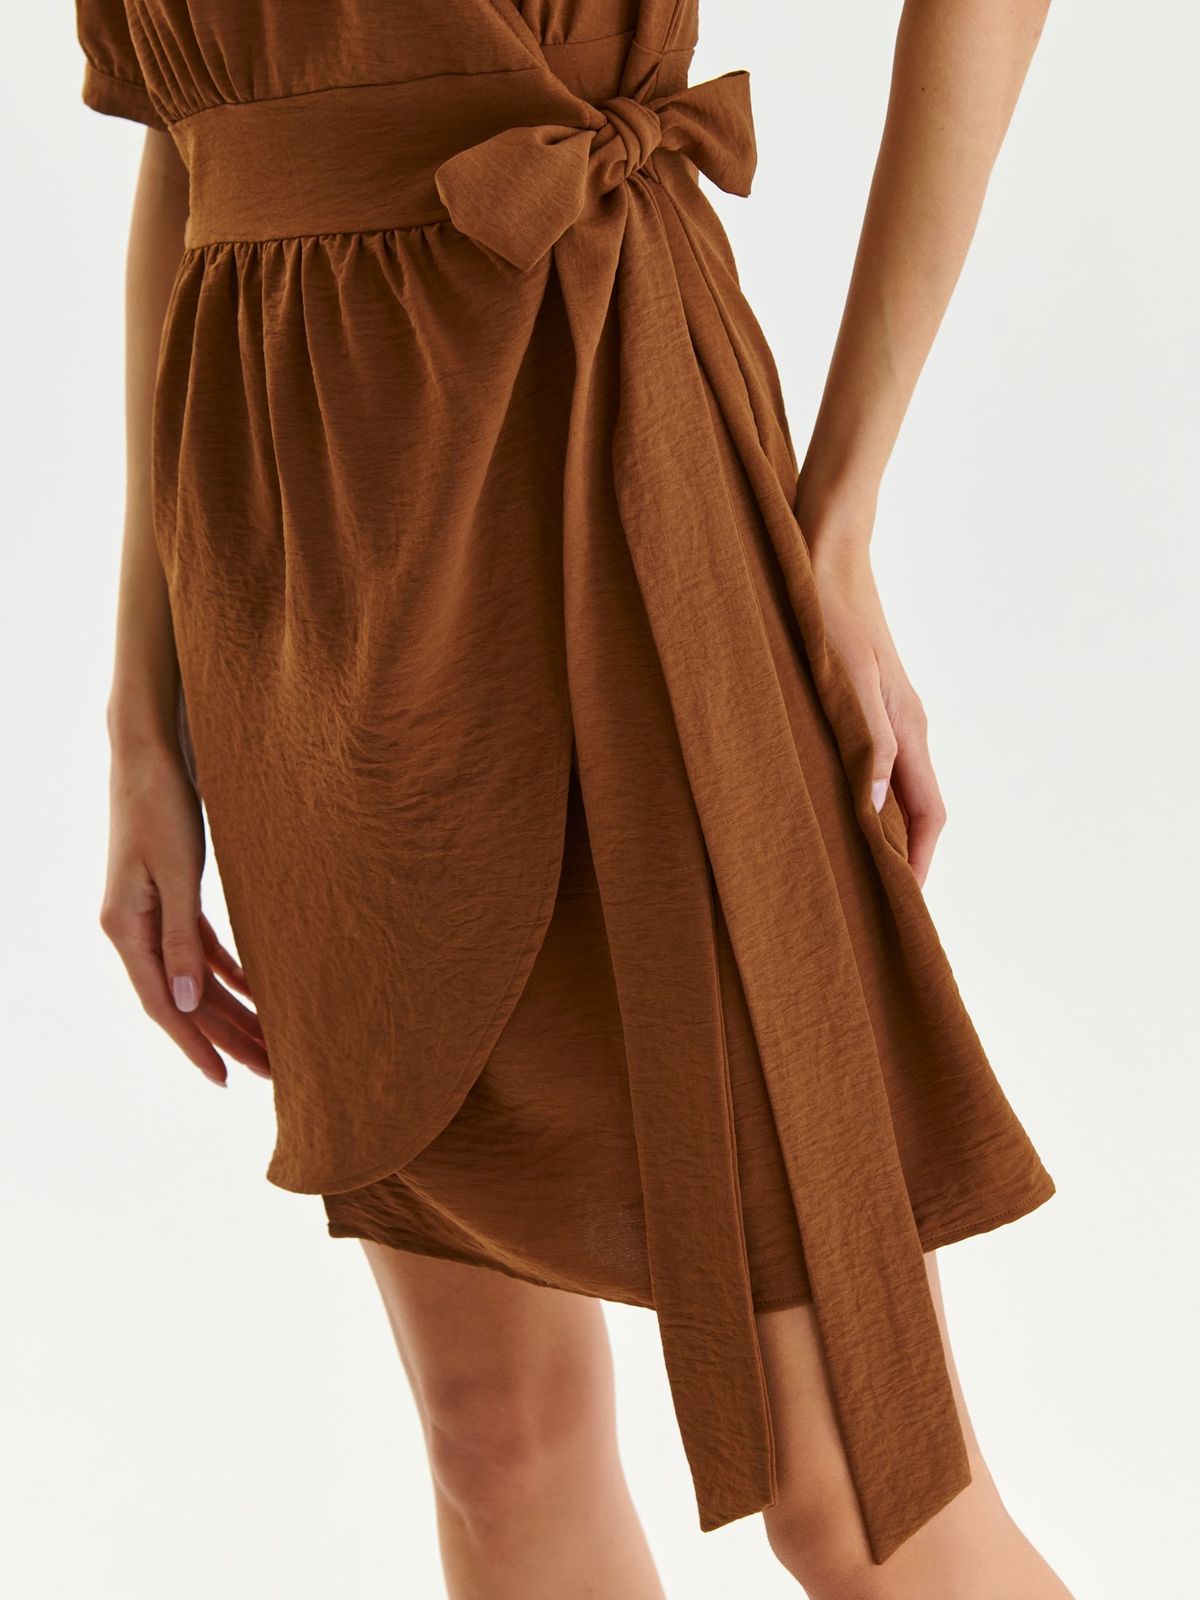 Brown dress thin fabric wrap around 5 - StarShinerS.com